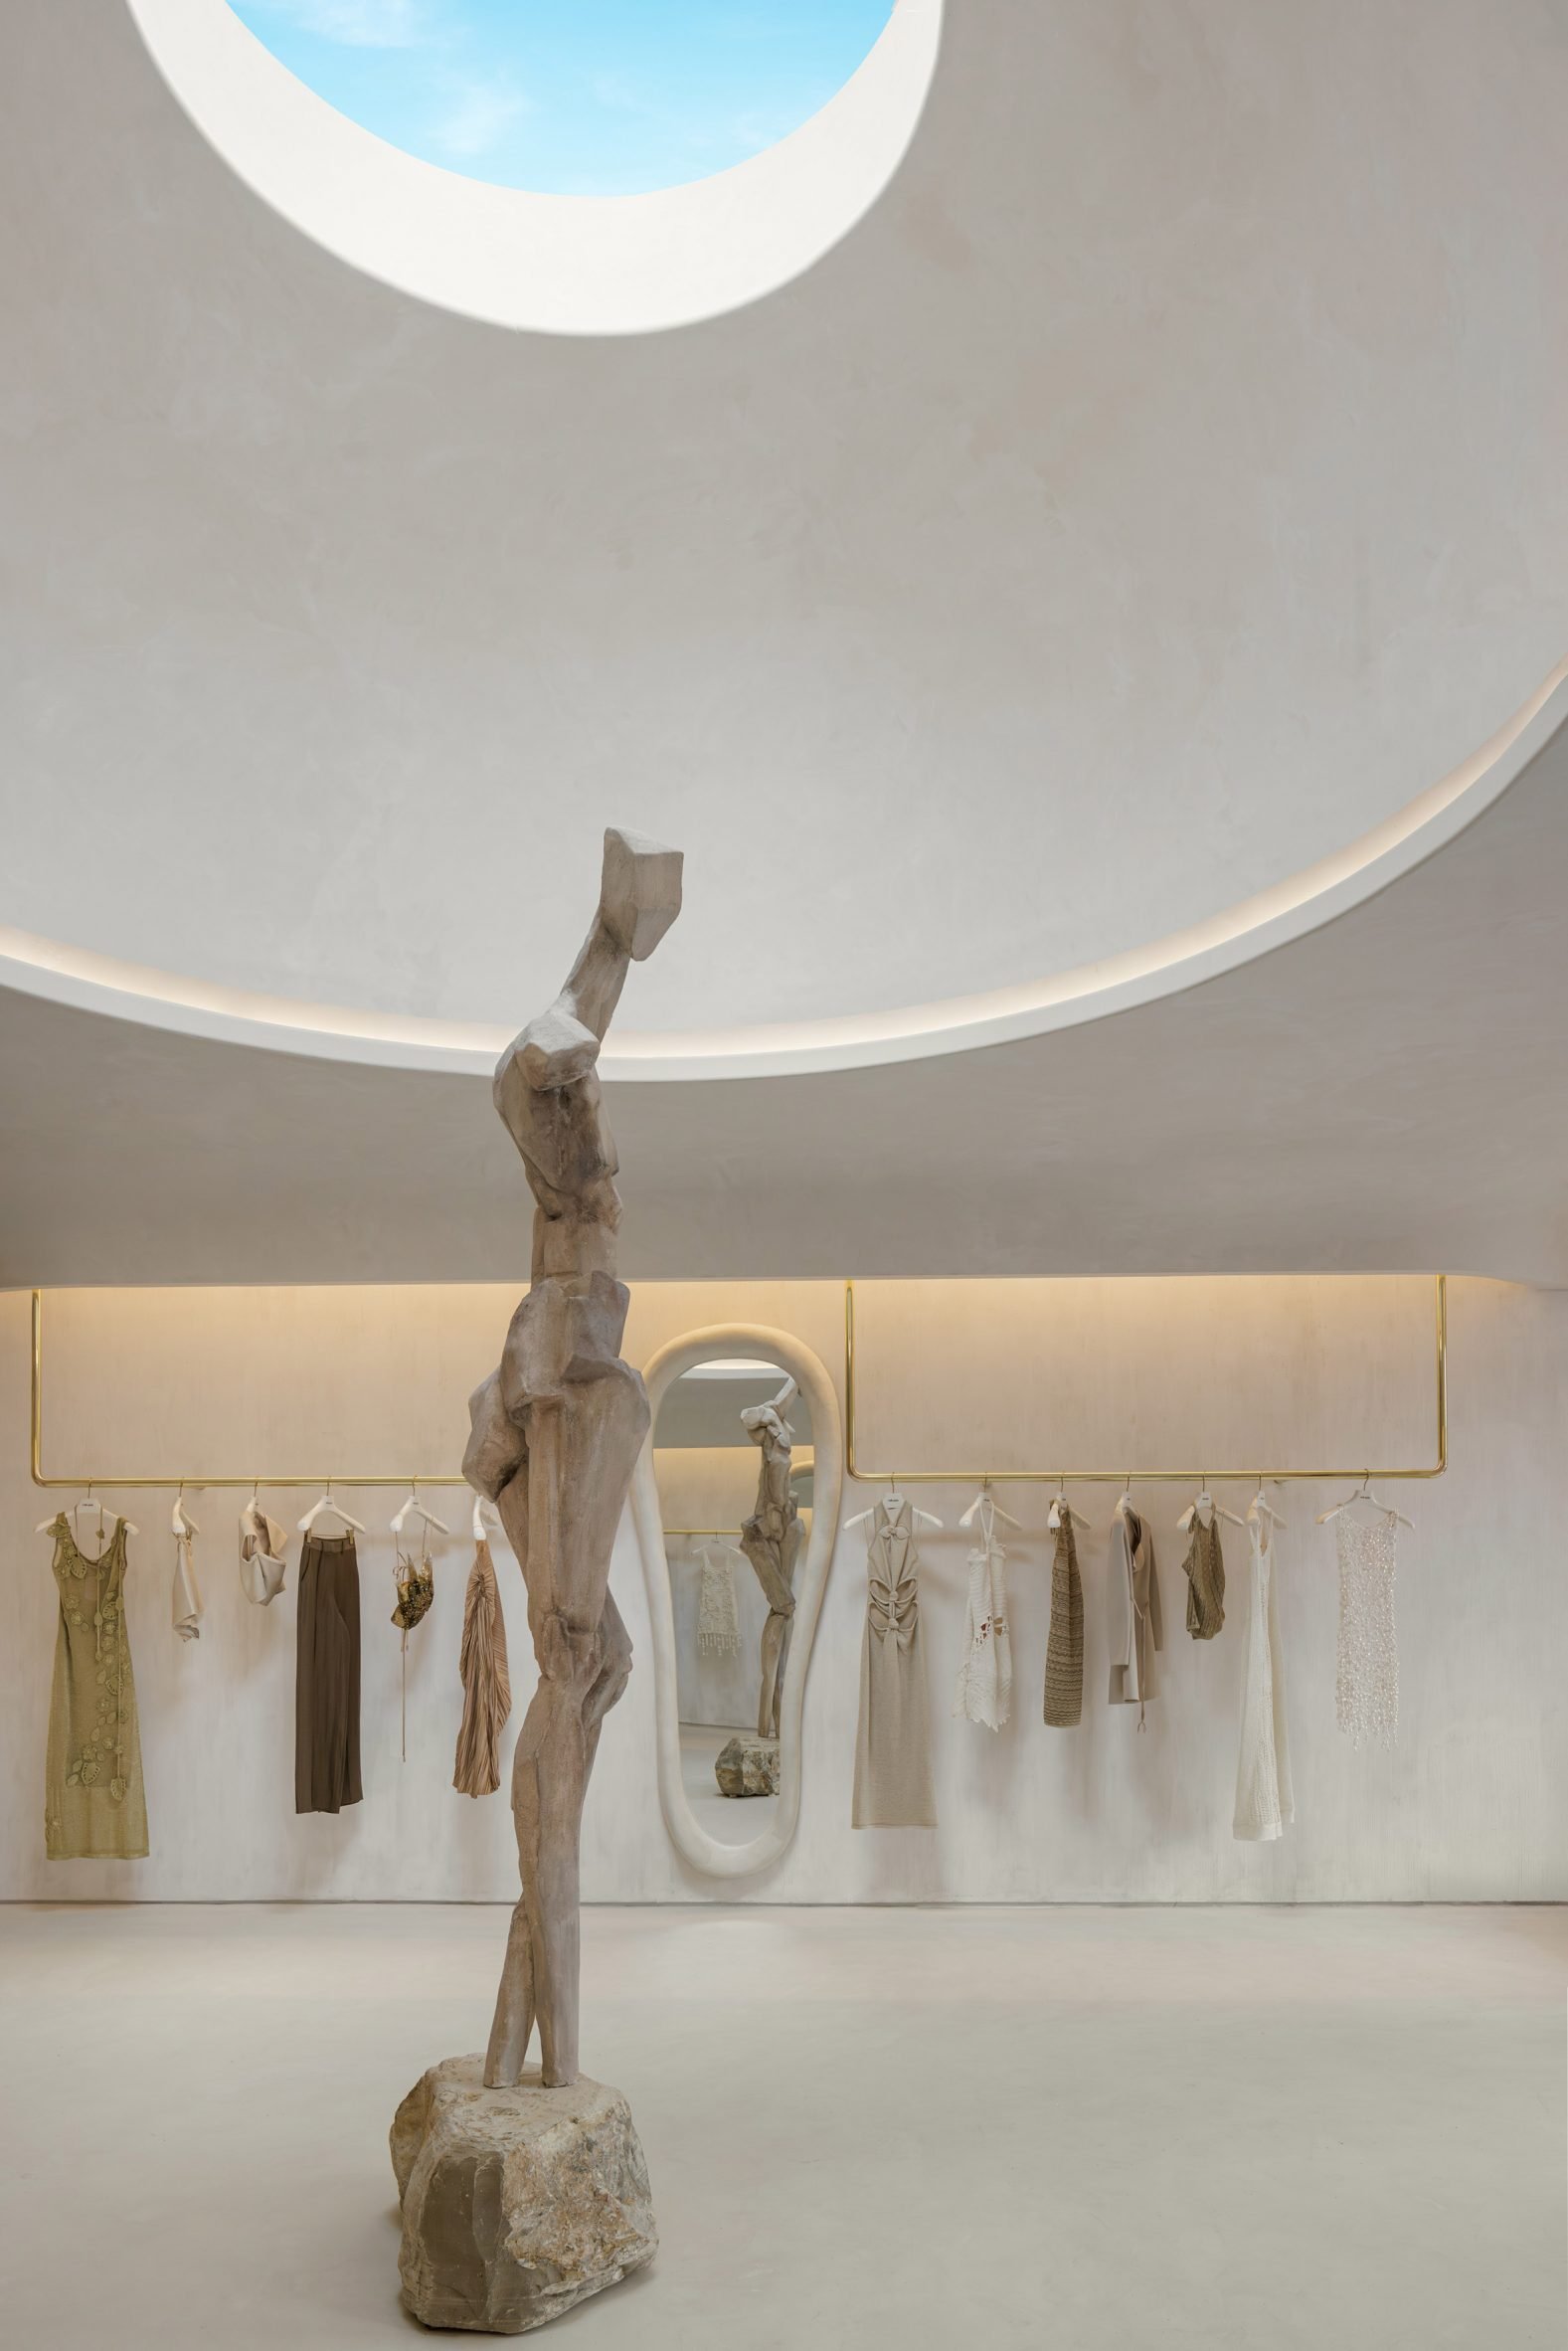 12-foot sculpture of the Greek goddess Gaia standing below an oculus